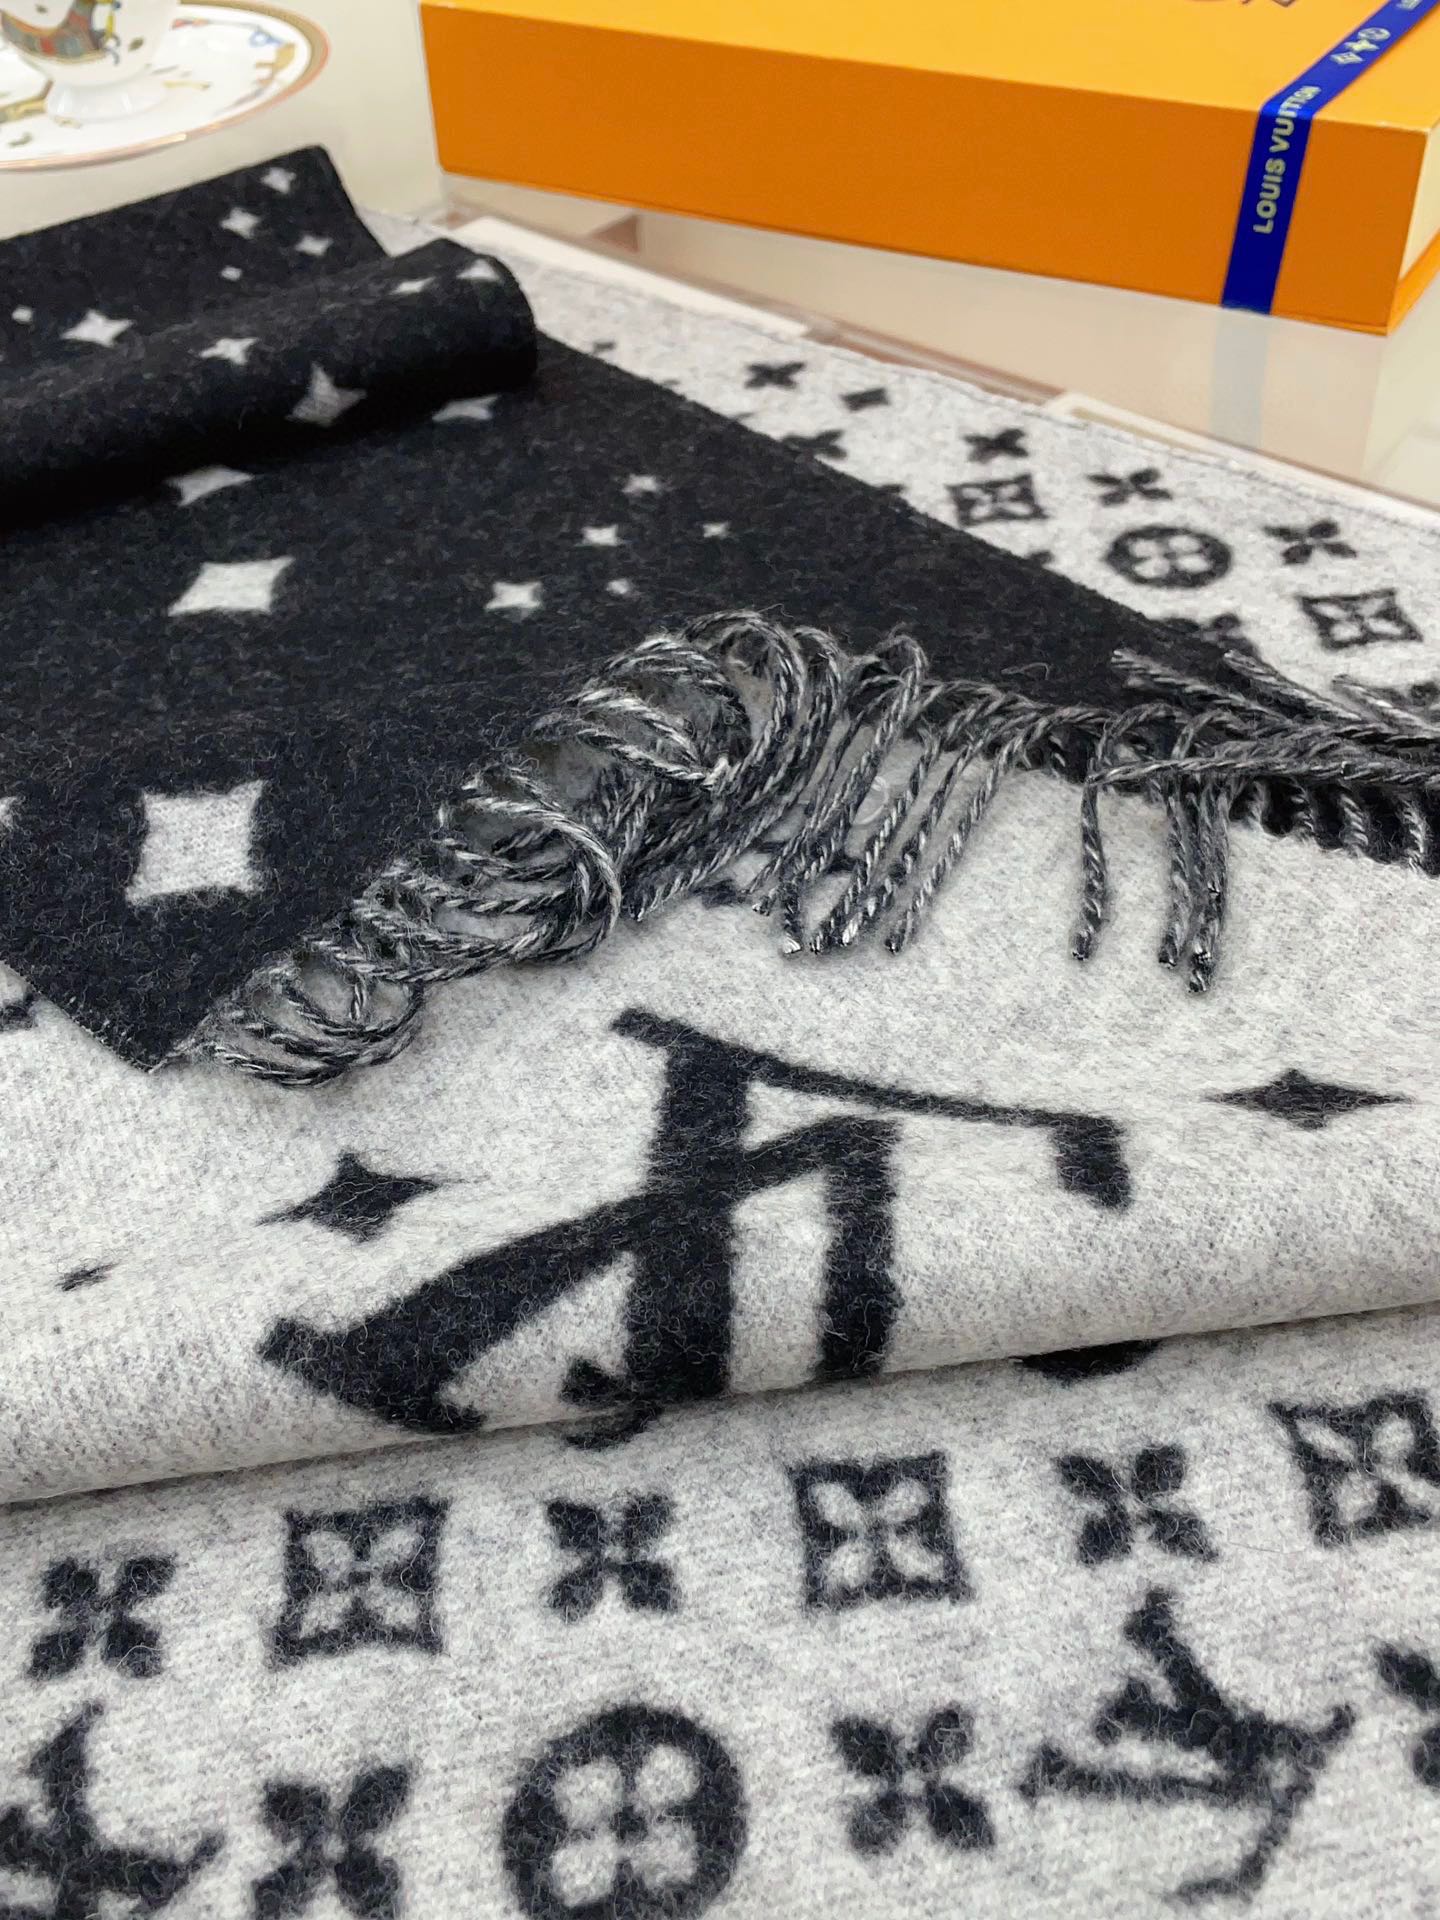 推荐️LV满天星最新黑灰双色设计羊绒披肩️手感非常软糯这样的设计一条等于两条实用又时髦️秋冬必备根据服饰